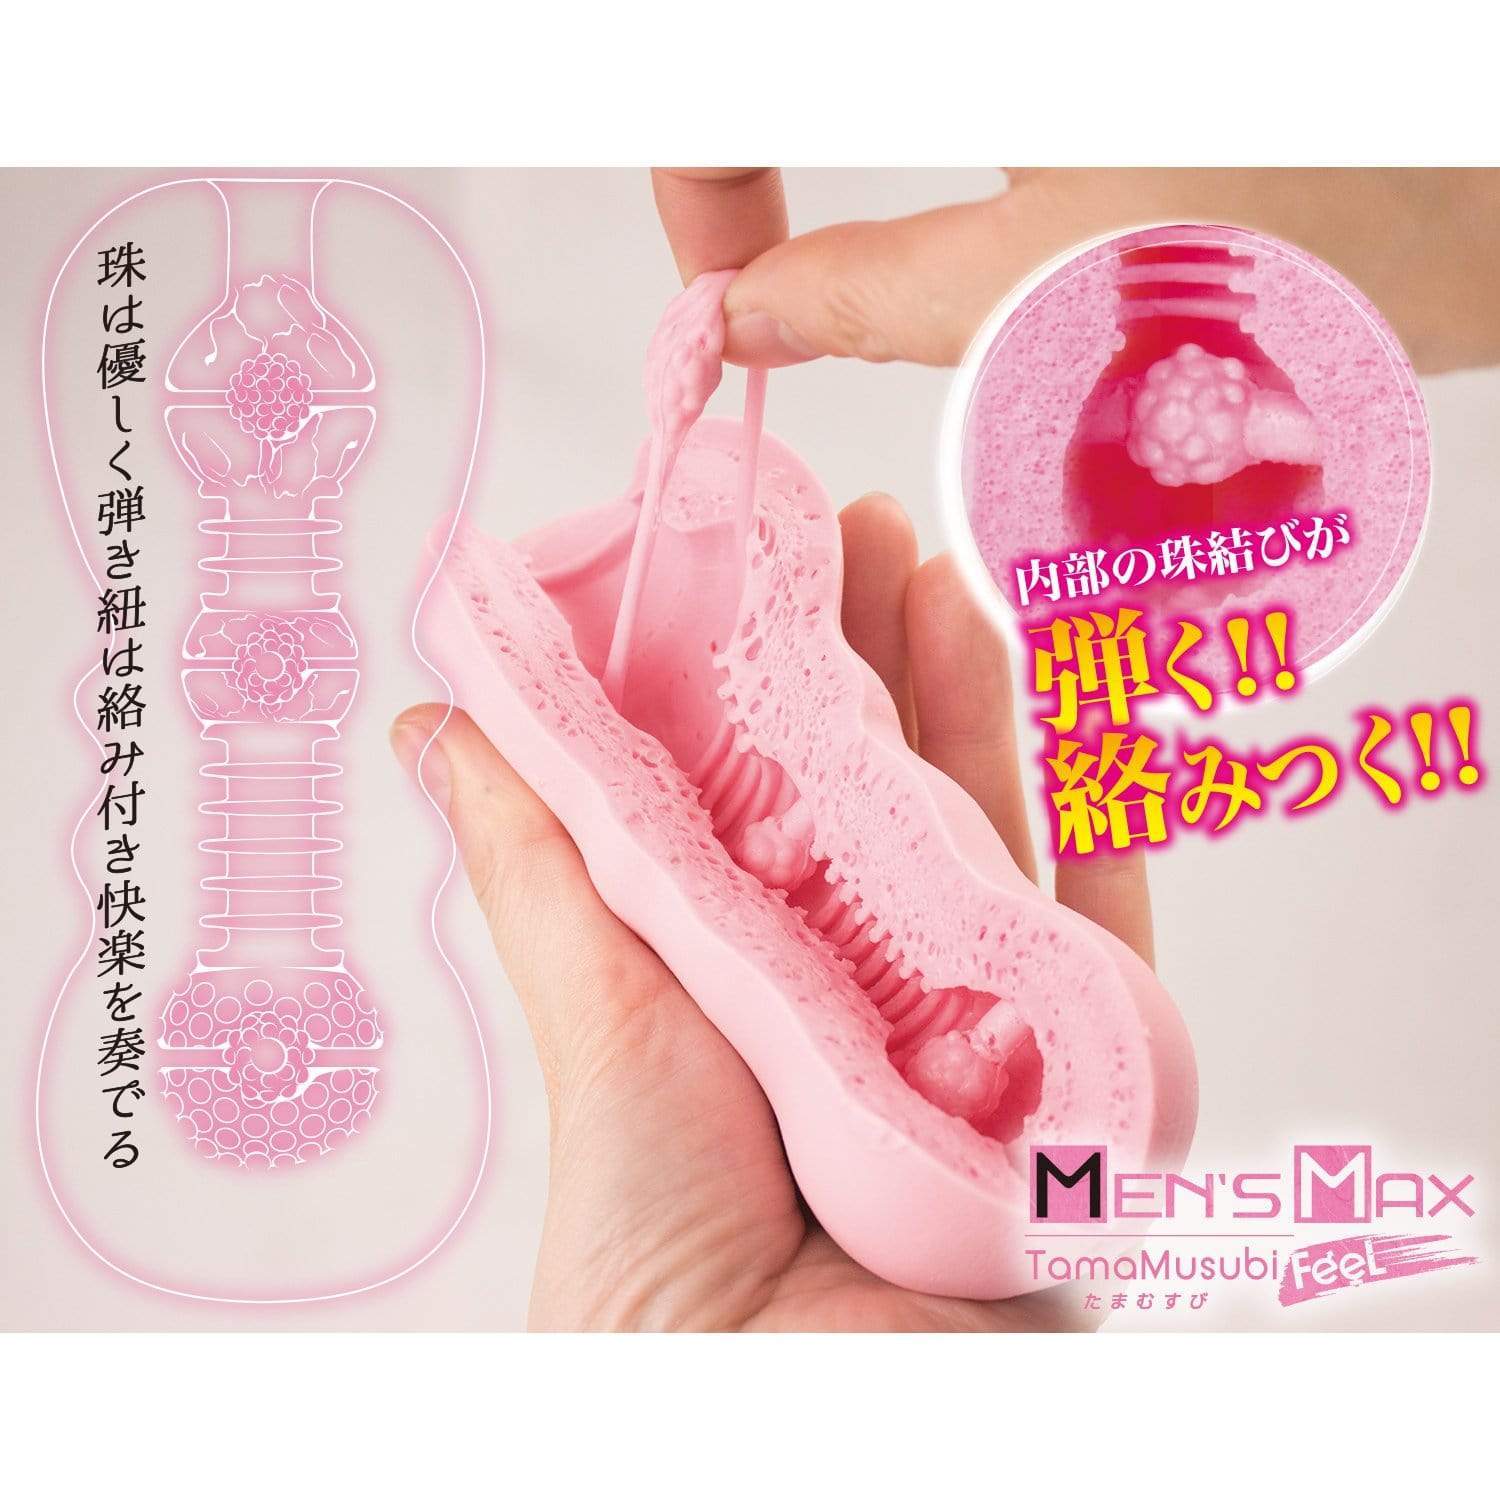 Men's Max - Tamamusubi Feel Soft Stroker Masturbator (Pink) -  Masturbator Vagina (Non Vibration)  Durio.sg